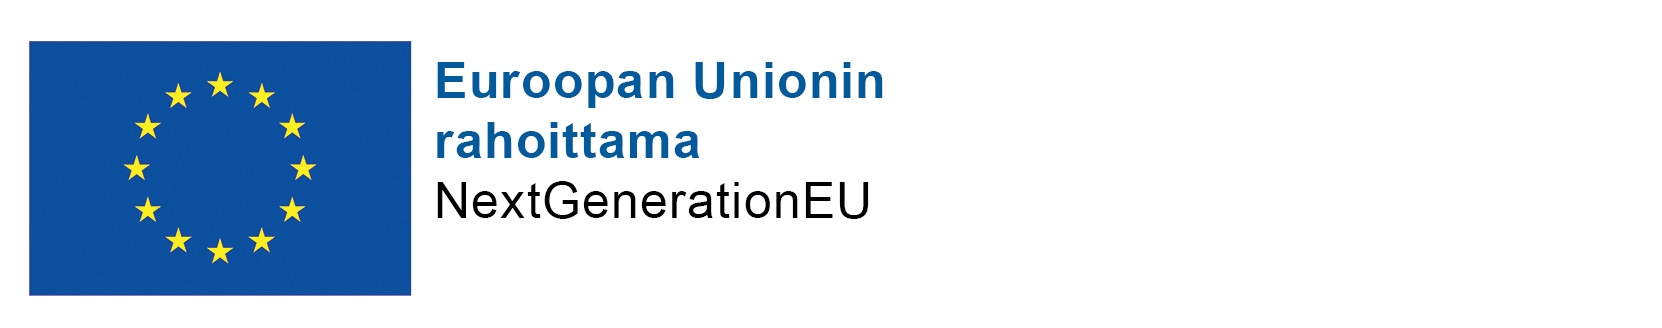 Euroopan Unionin rahoittama, NextGenerationEU:n logo